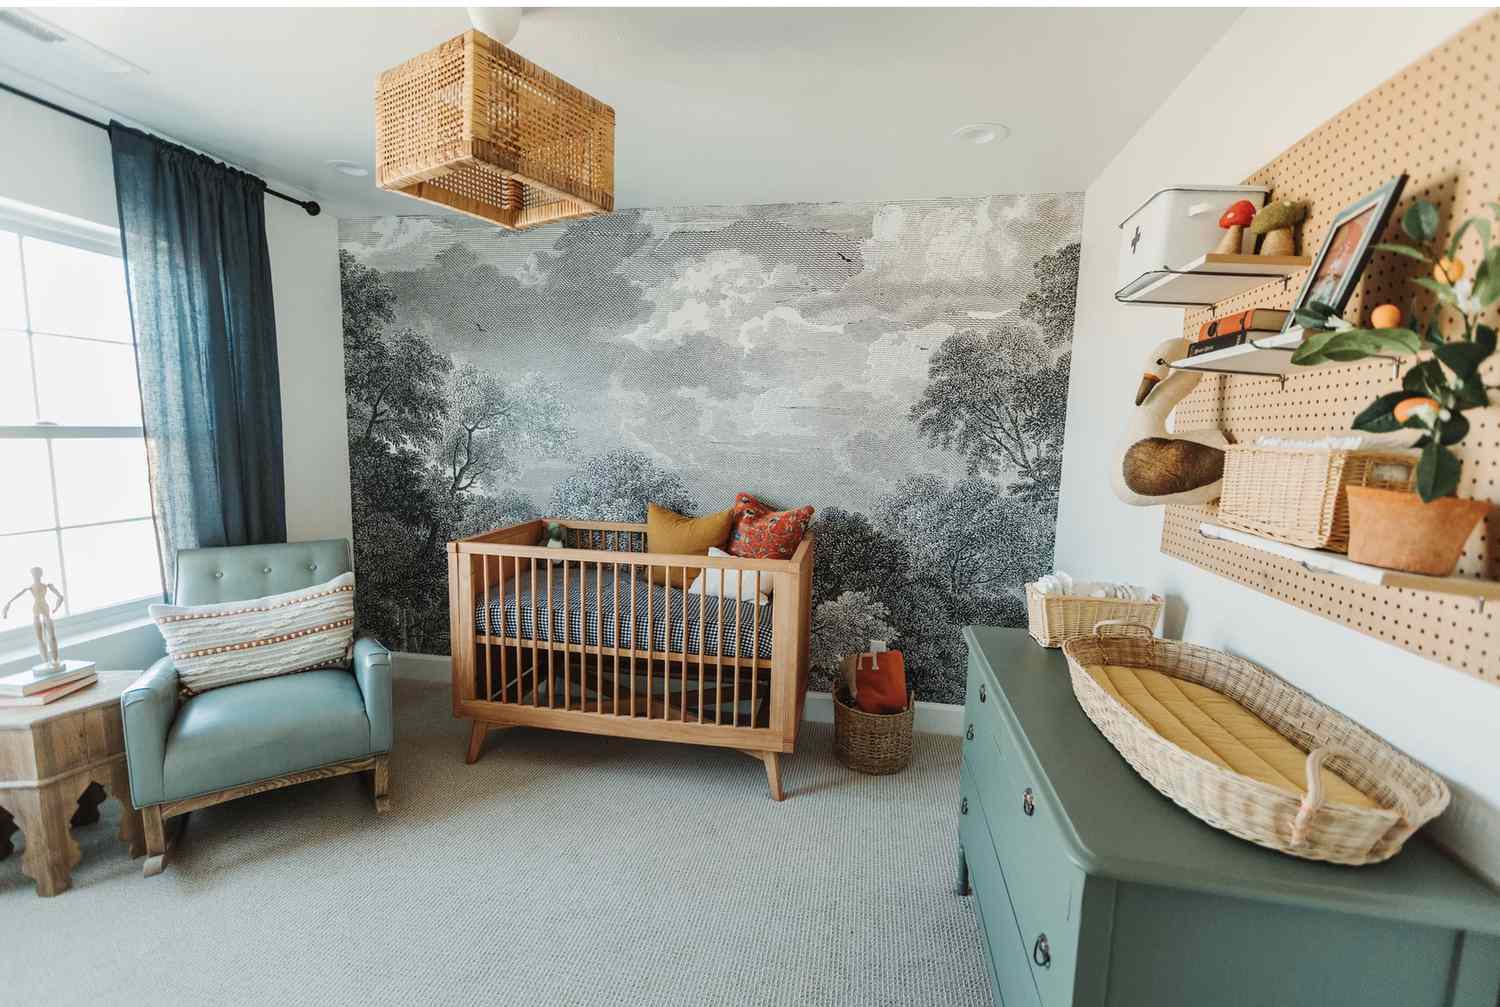 Kinderzimmer mit naturfarbener Akzentwand und tealfarbenen Möbeln